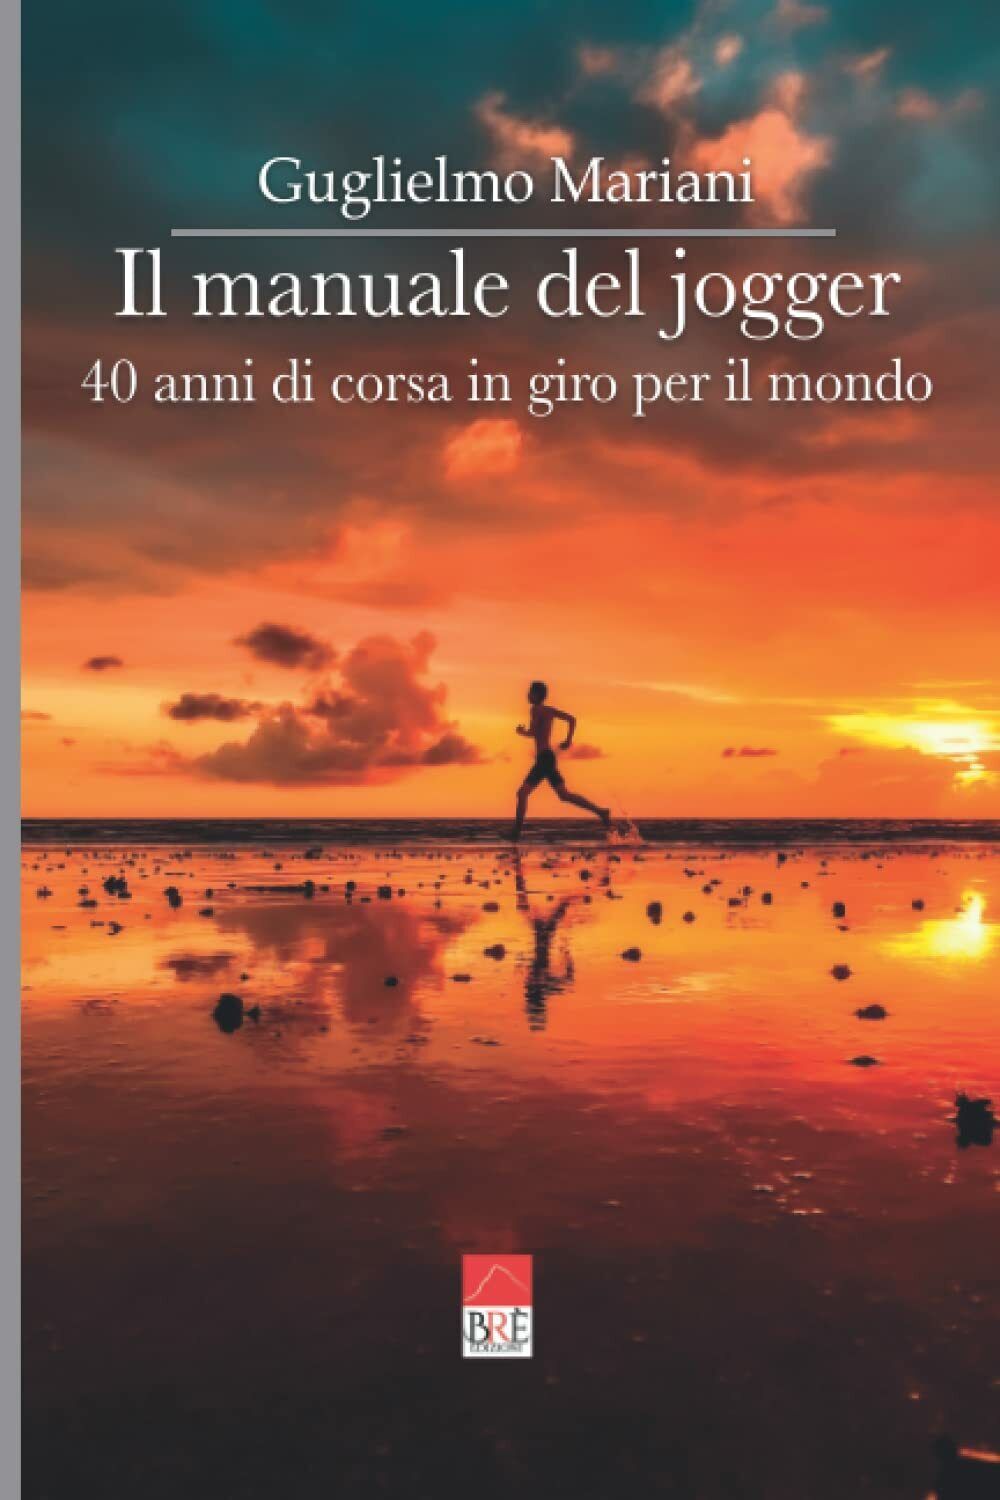 Il manuale del jogger - Guglielmo Mariani - Br?, 2022